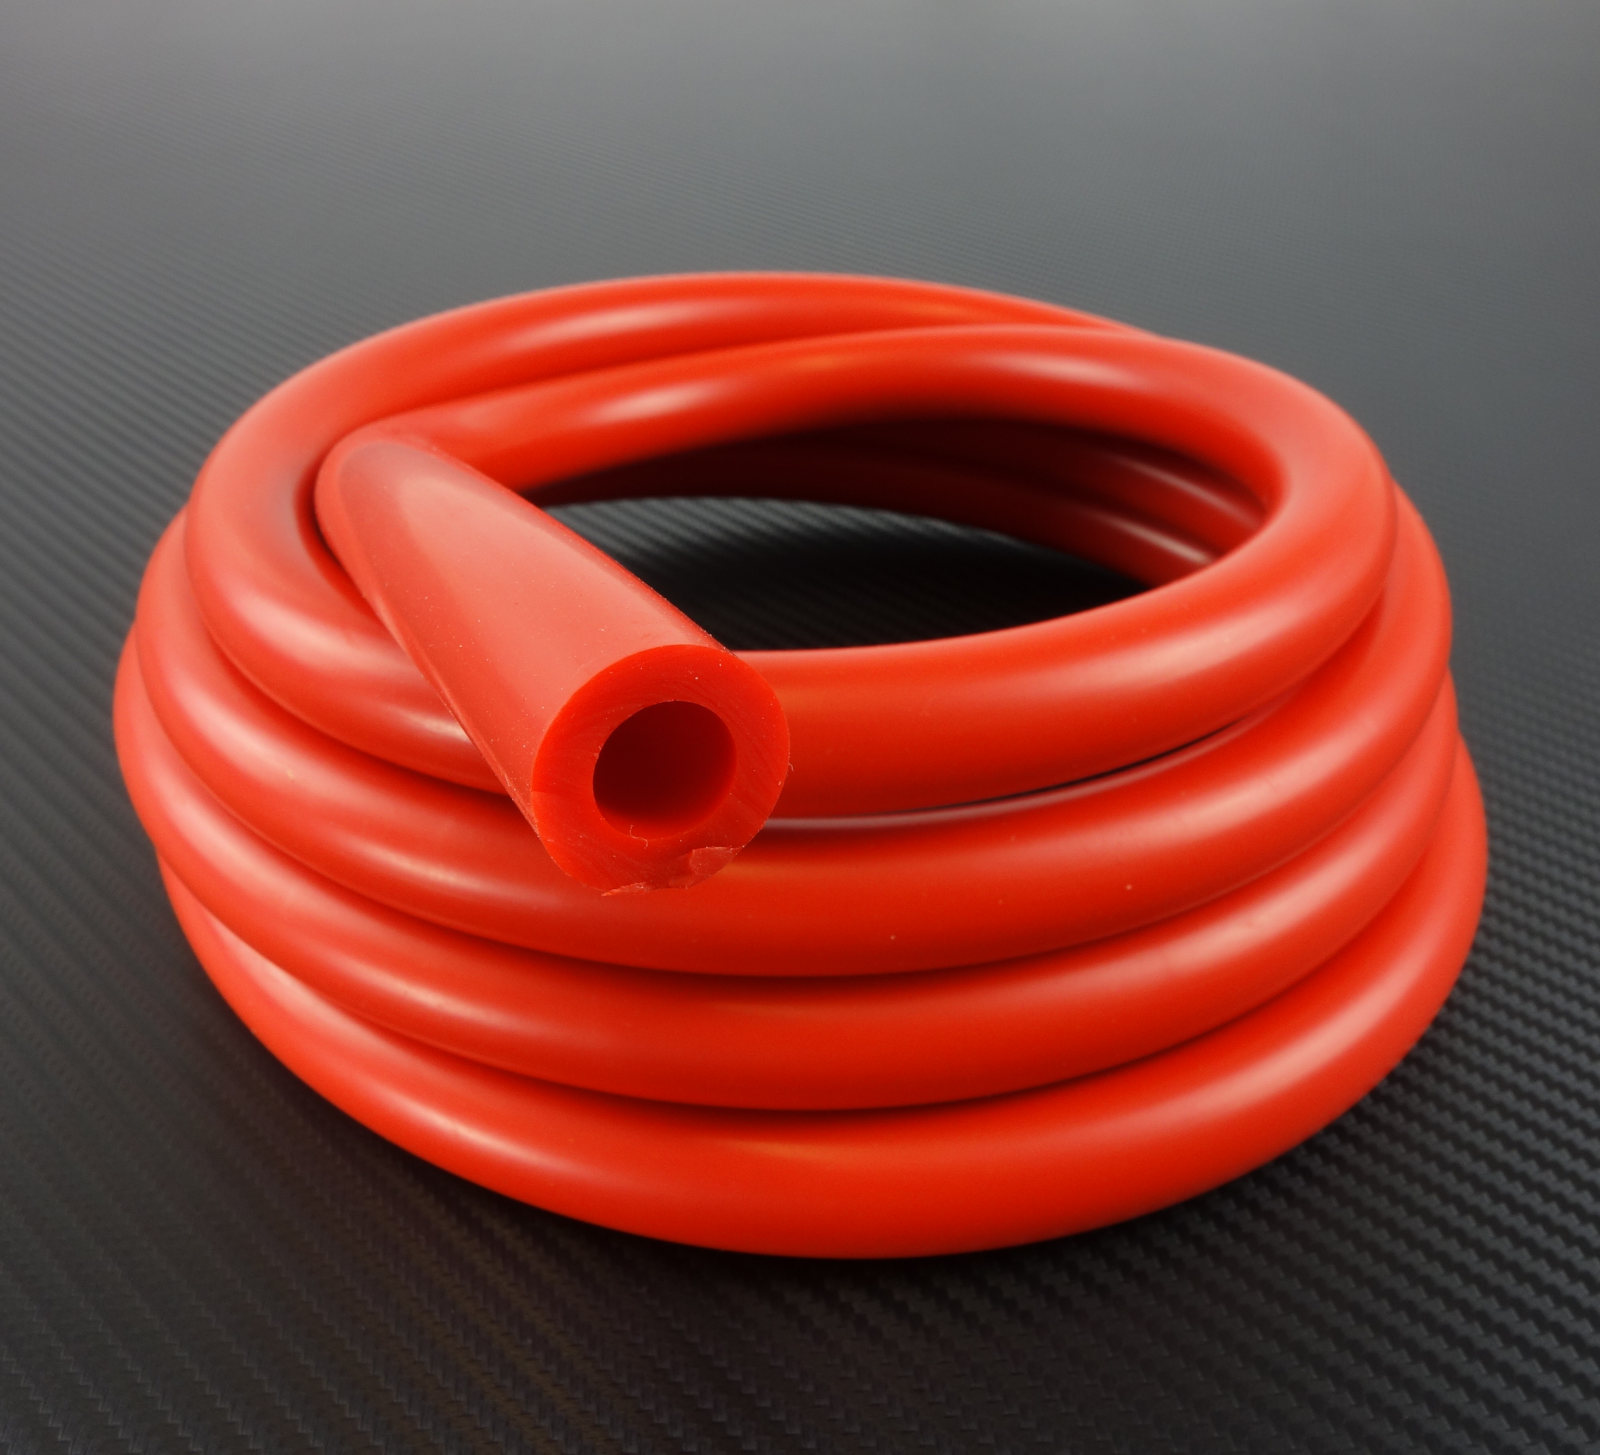 Tubo per vuoto in silicone 4mm, rosso, 2,70 €